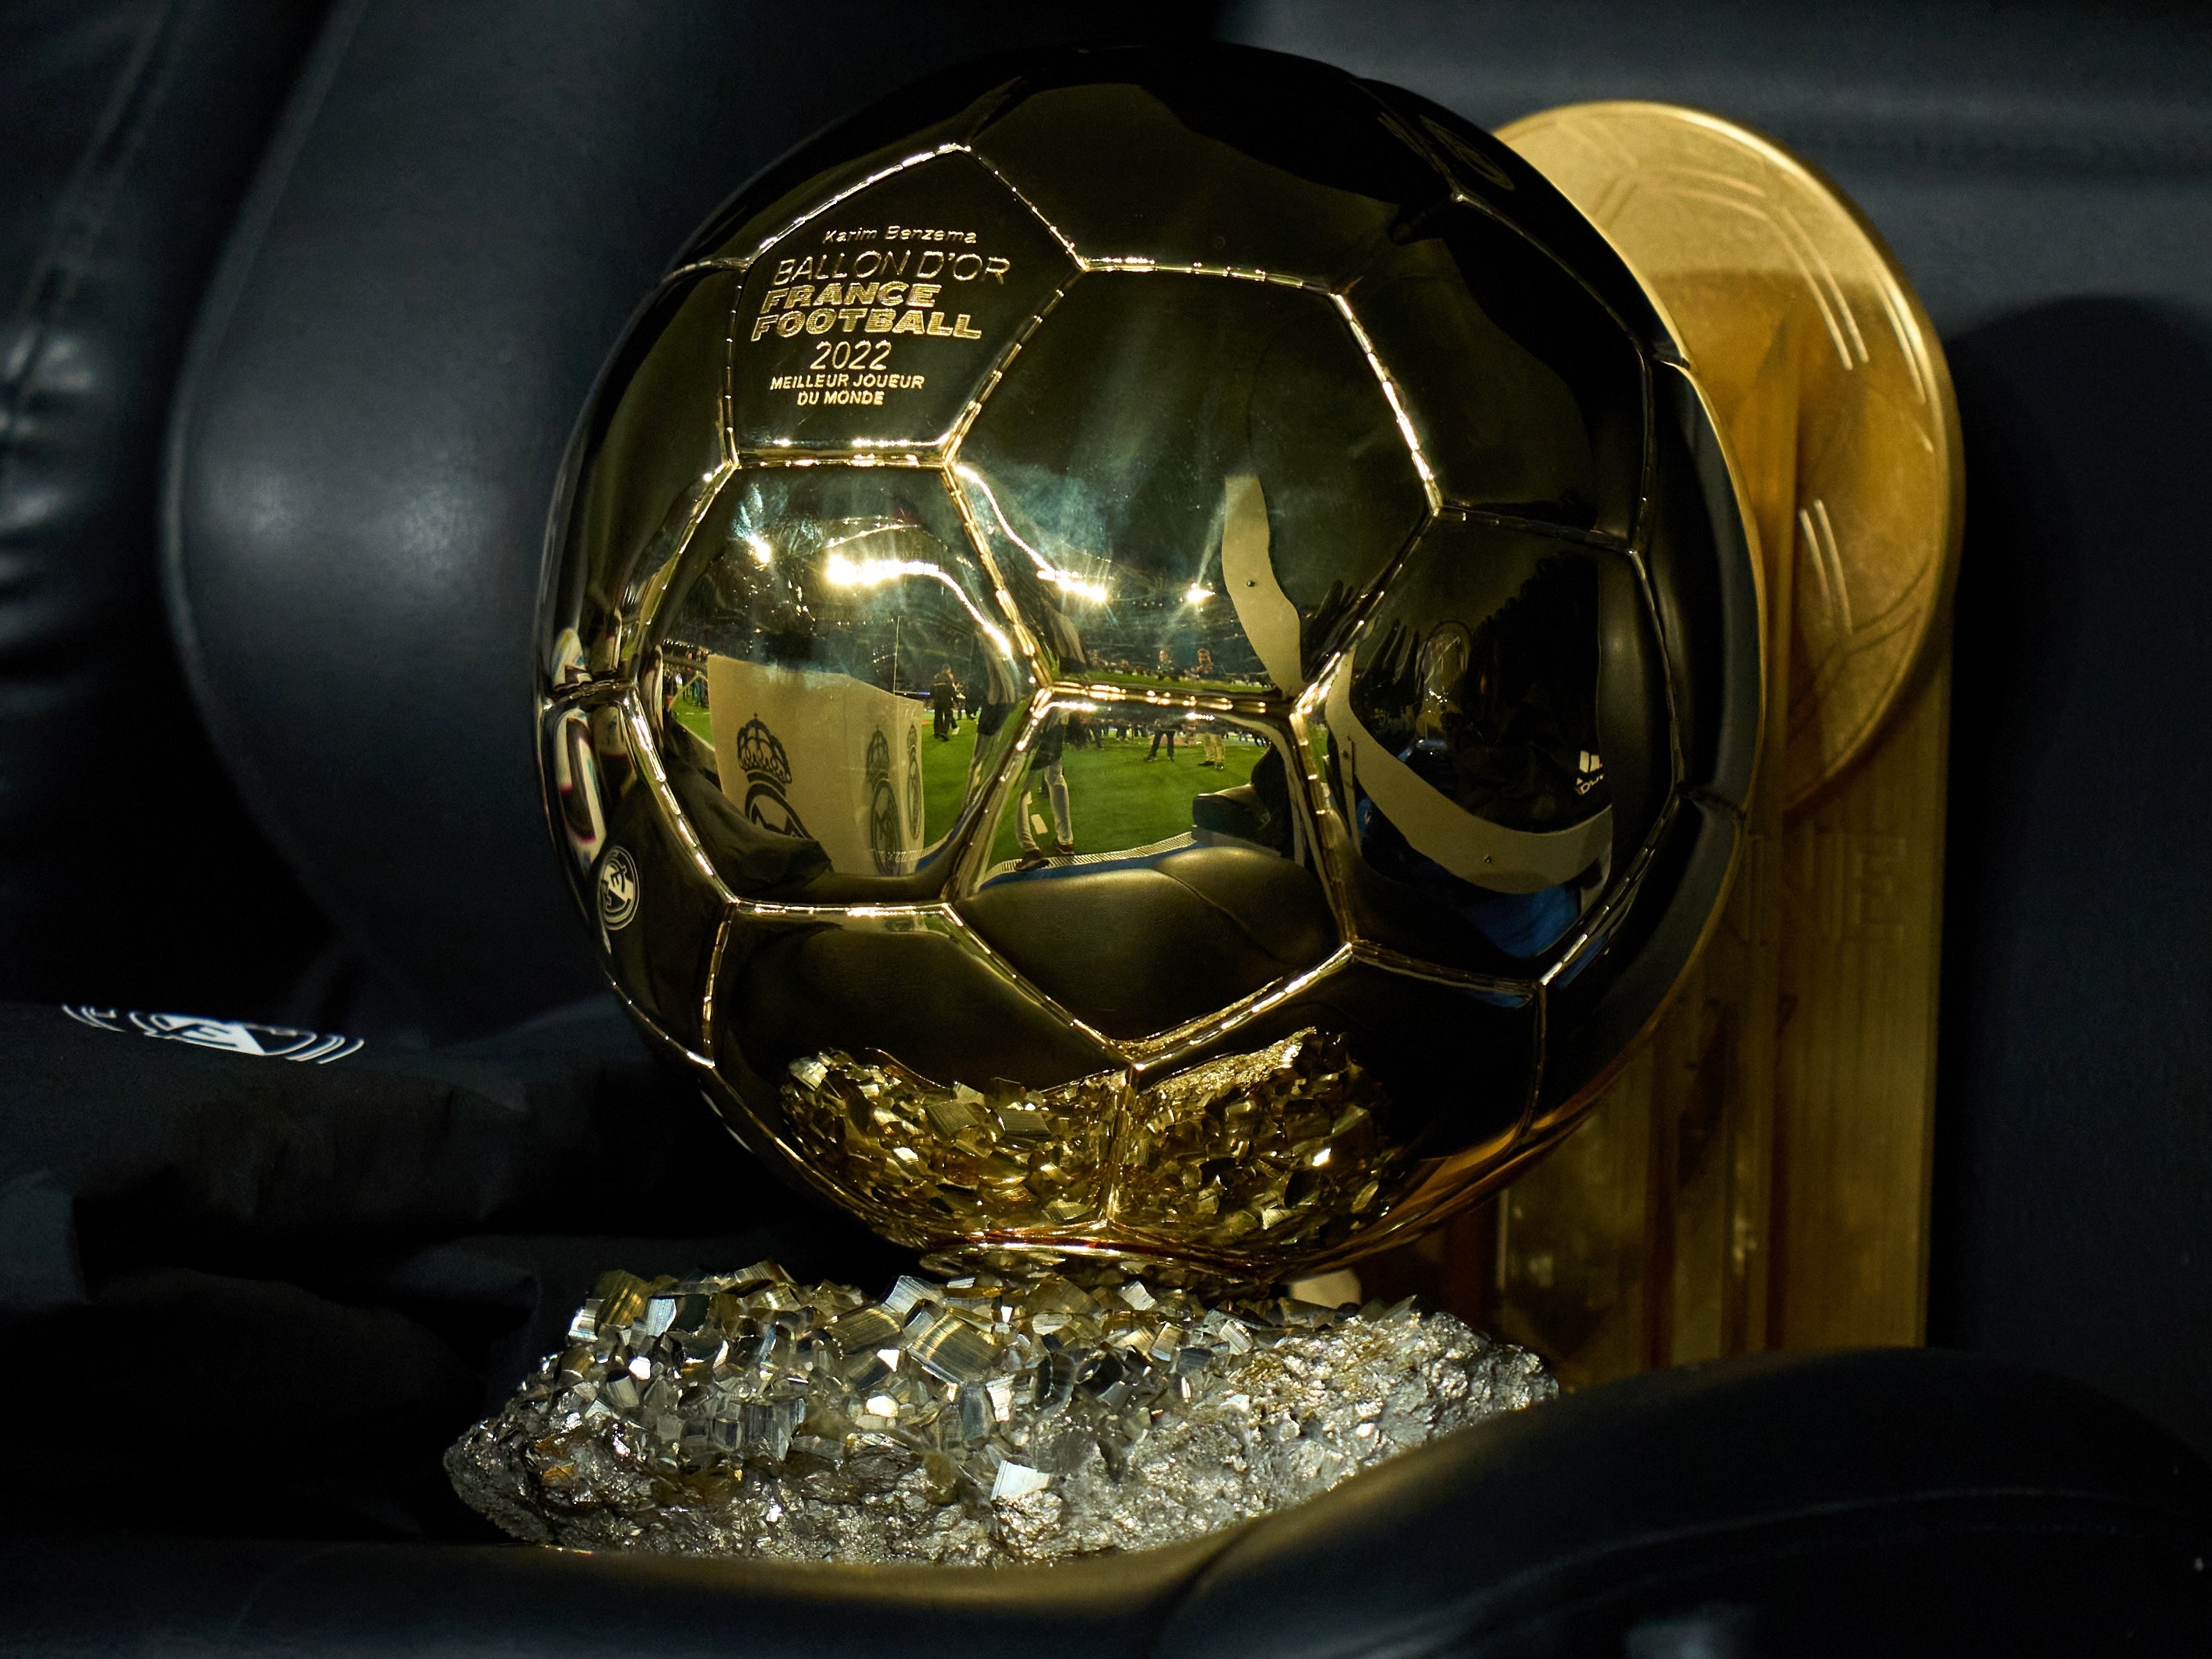 Bola de Ouro 2023: Confira os vencedores de cada categoria e a lista dos 30 melhores  jogadores do mundo - Lance!